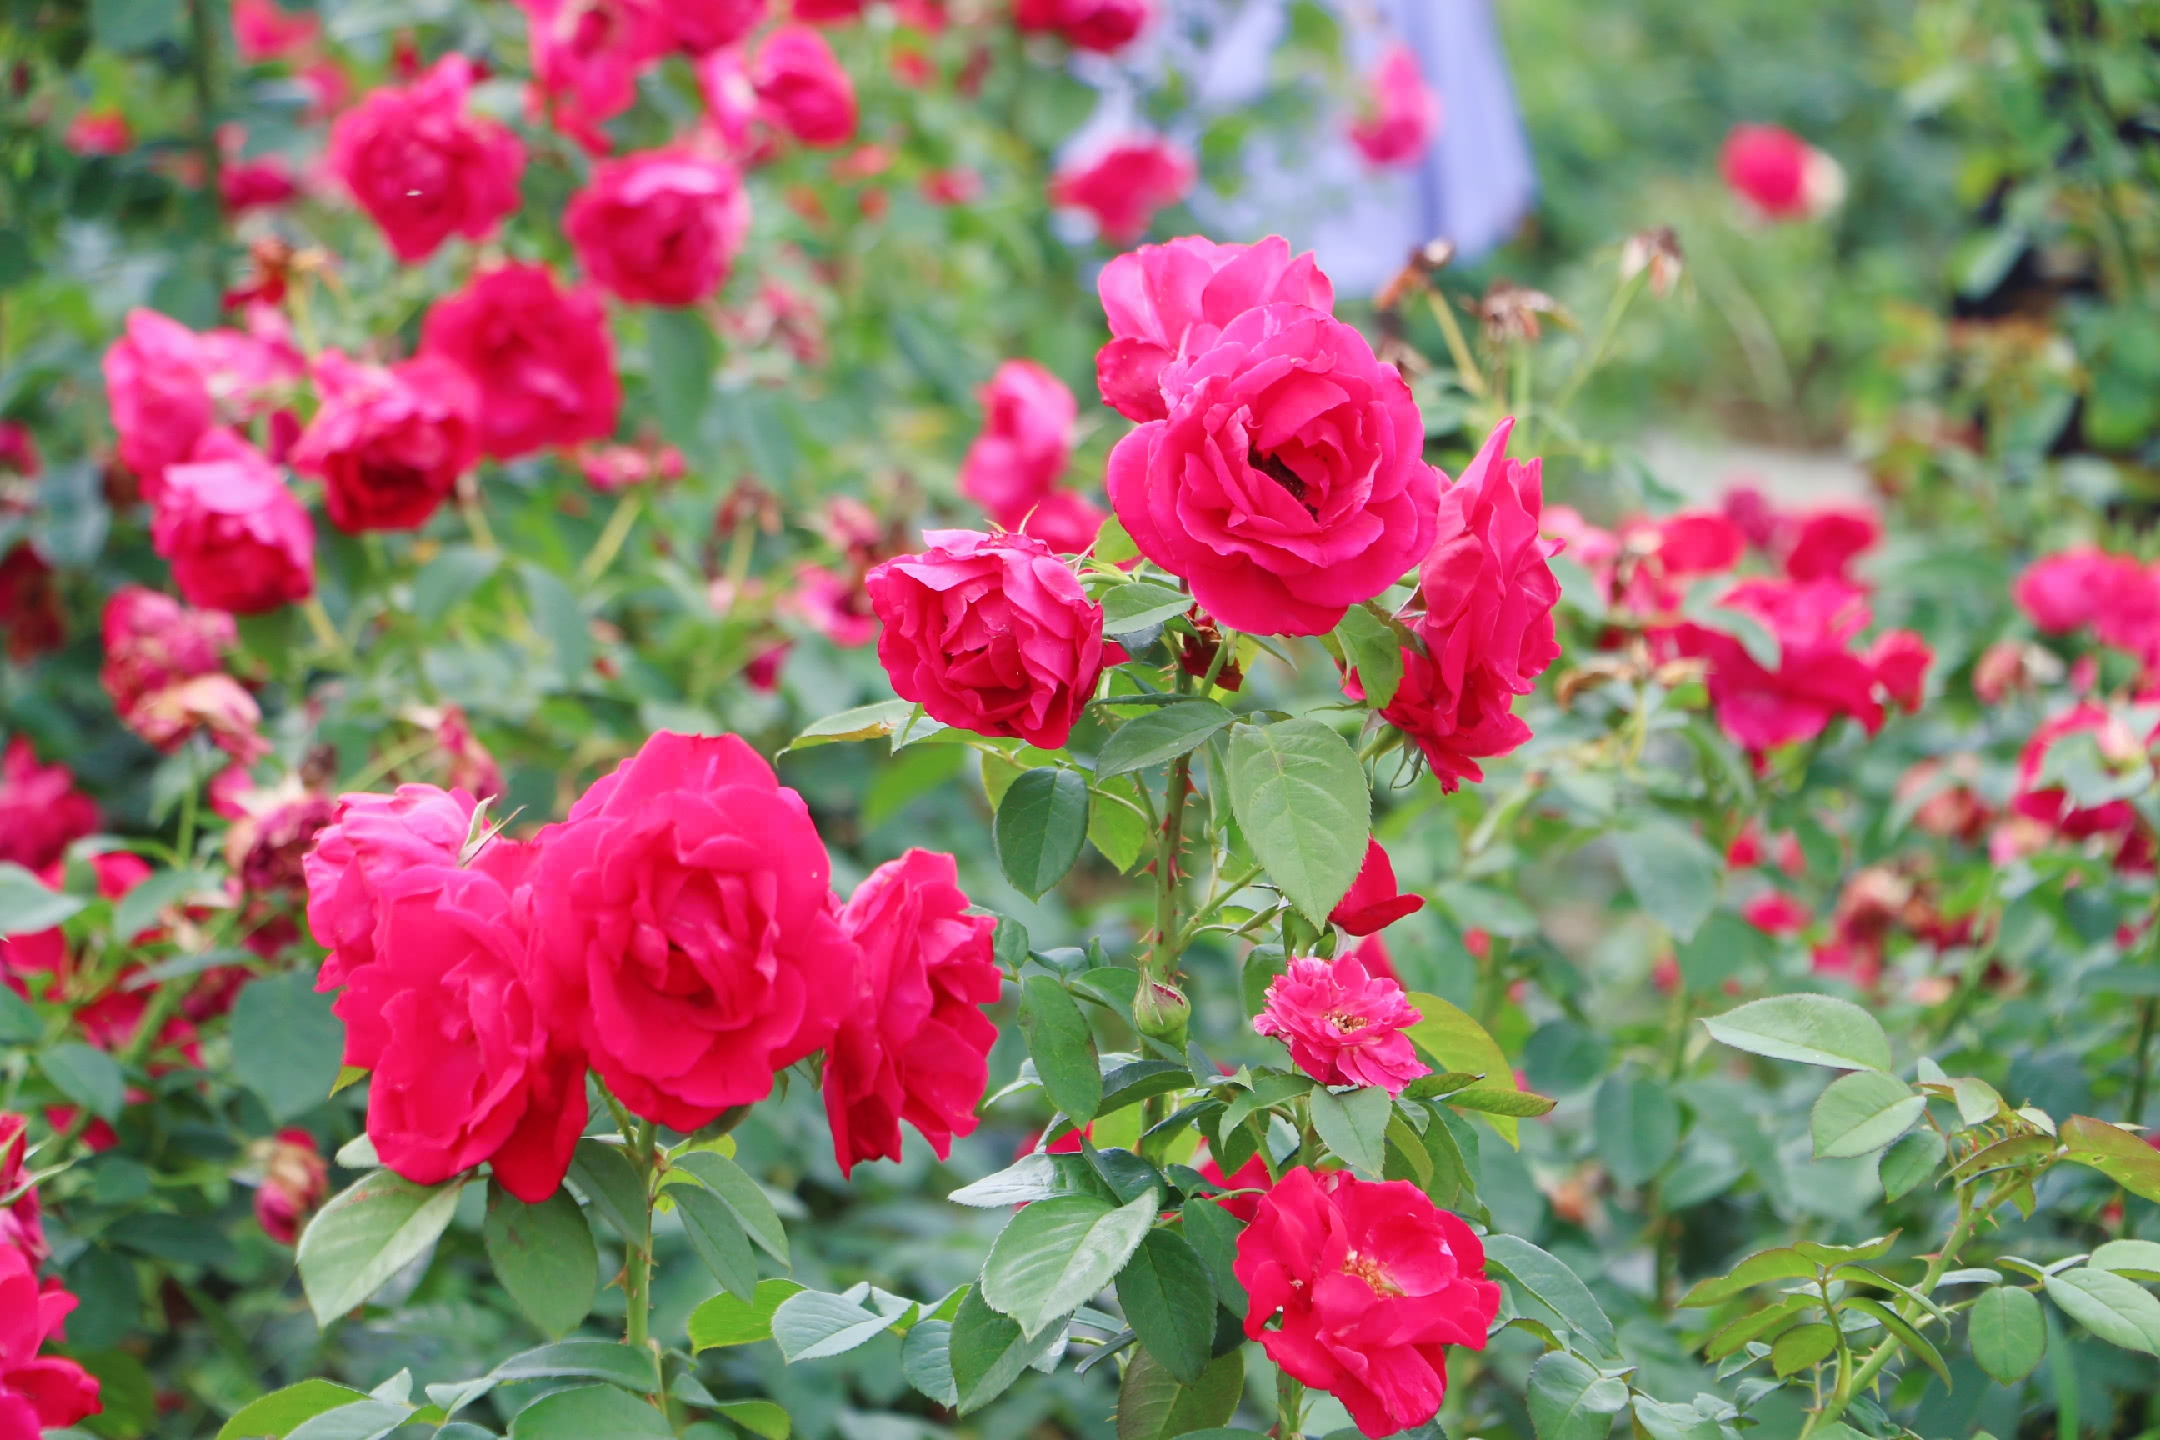 喜欢玫瑰花的一定不要错过，常州玫瑰风情园绽放千亩玫瑰花